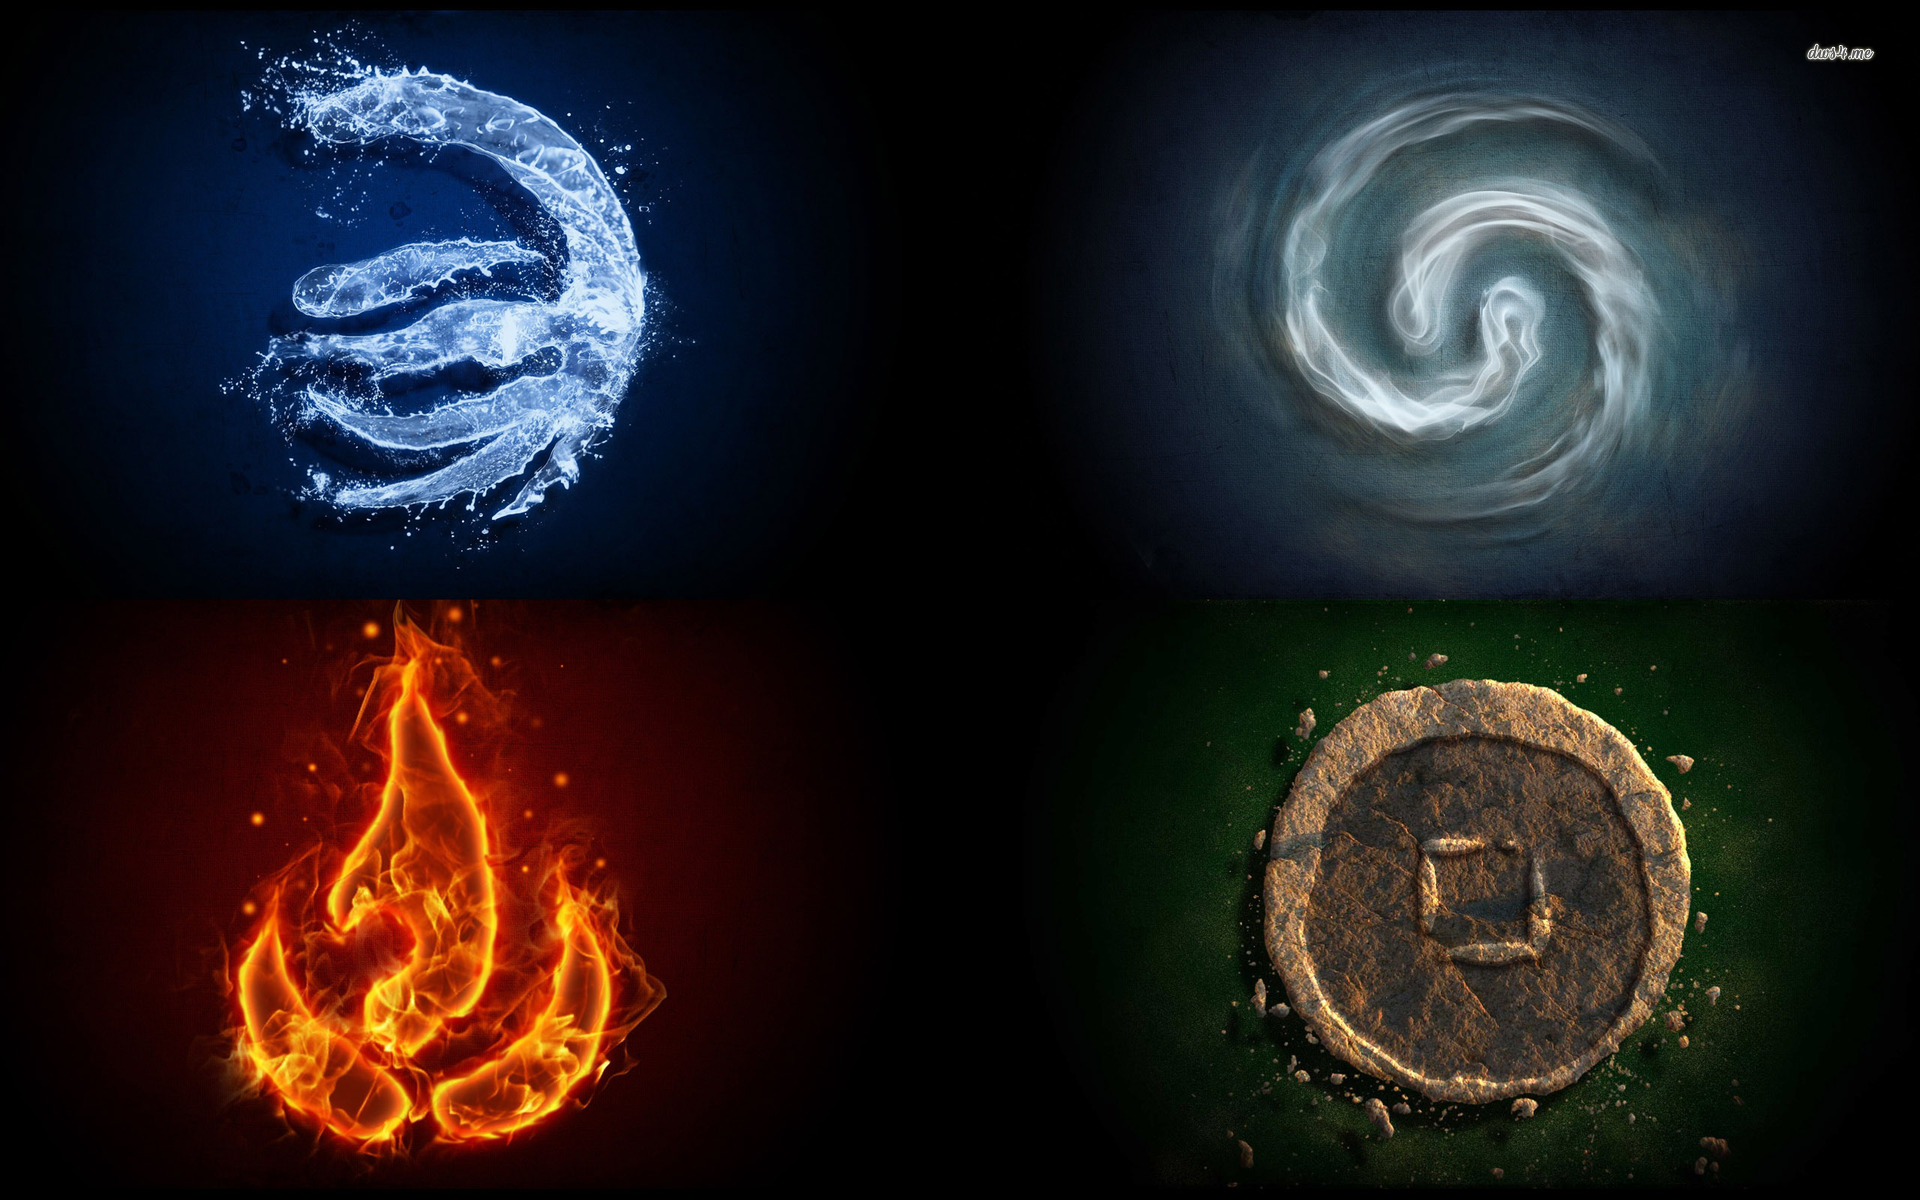 4 elements symbols wallpaper